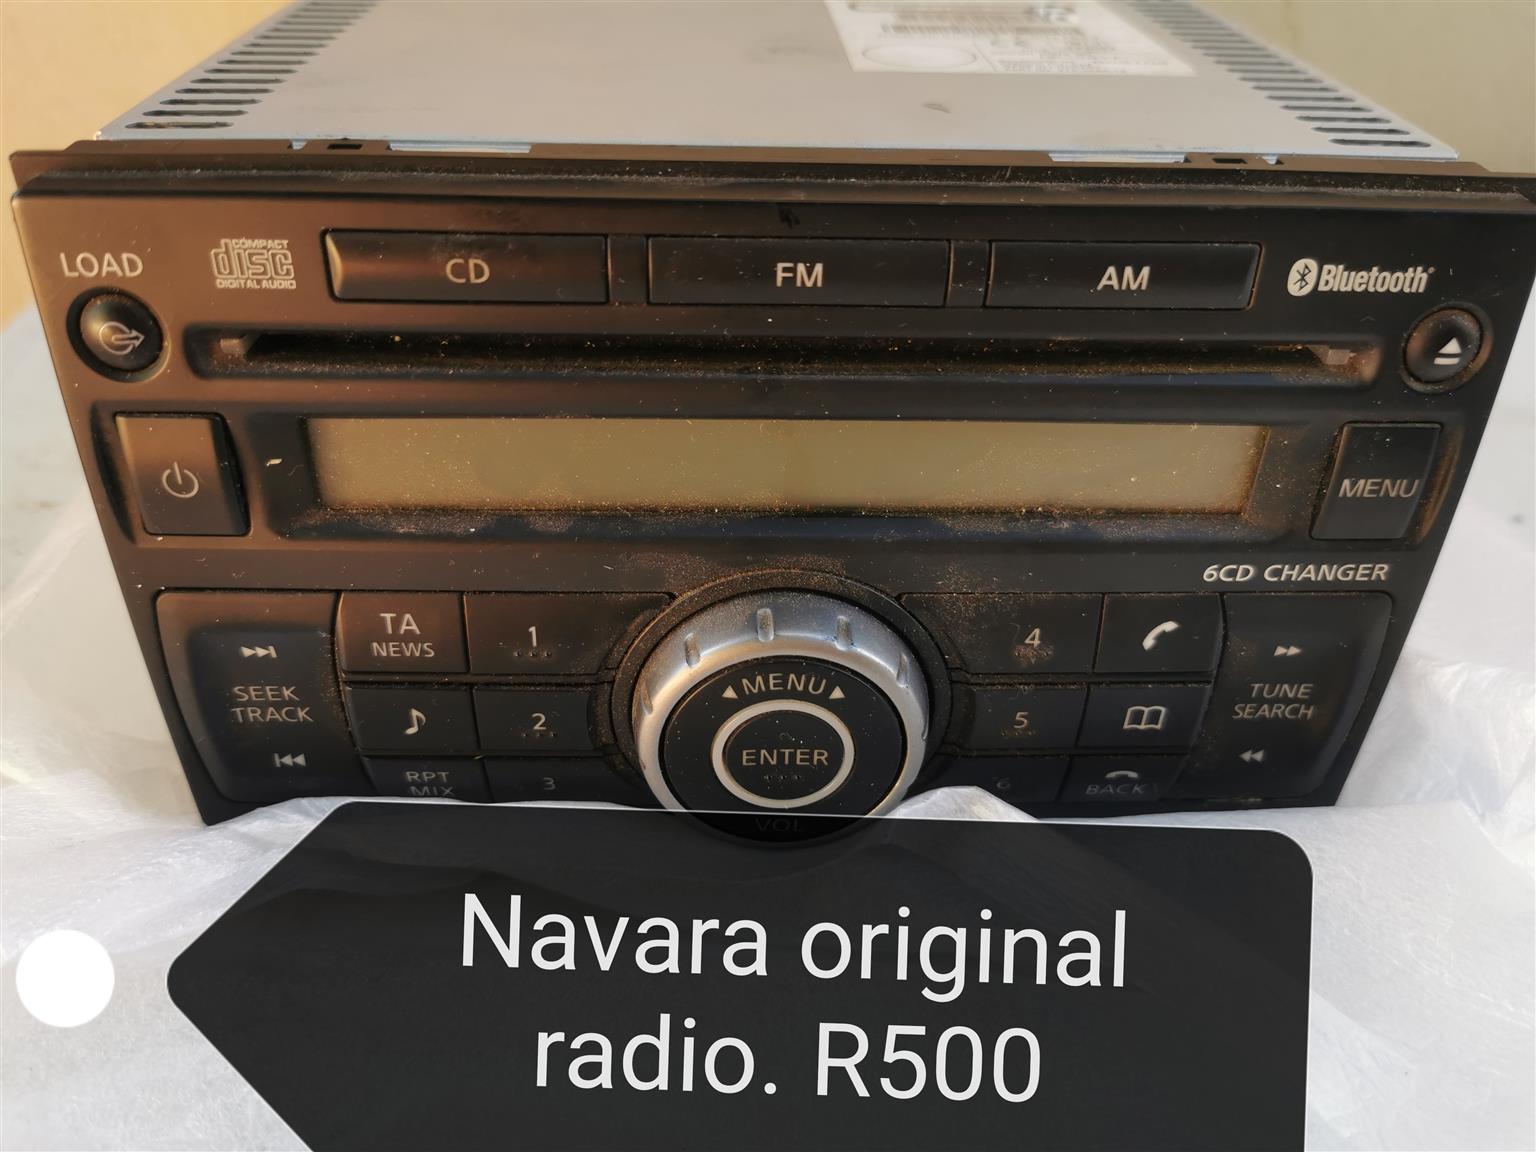 Navara replacement radio